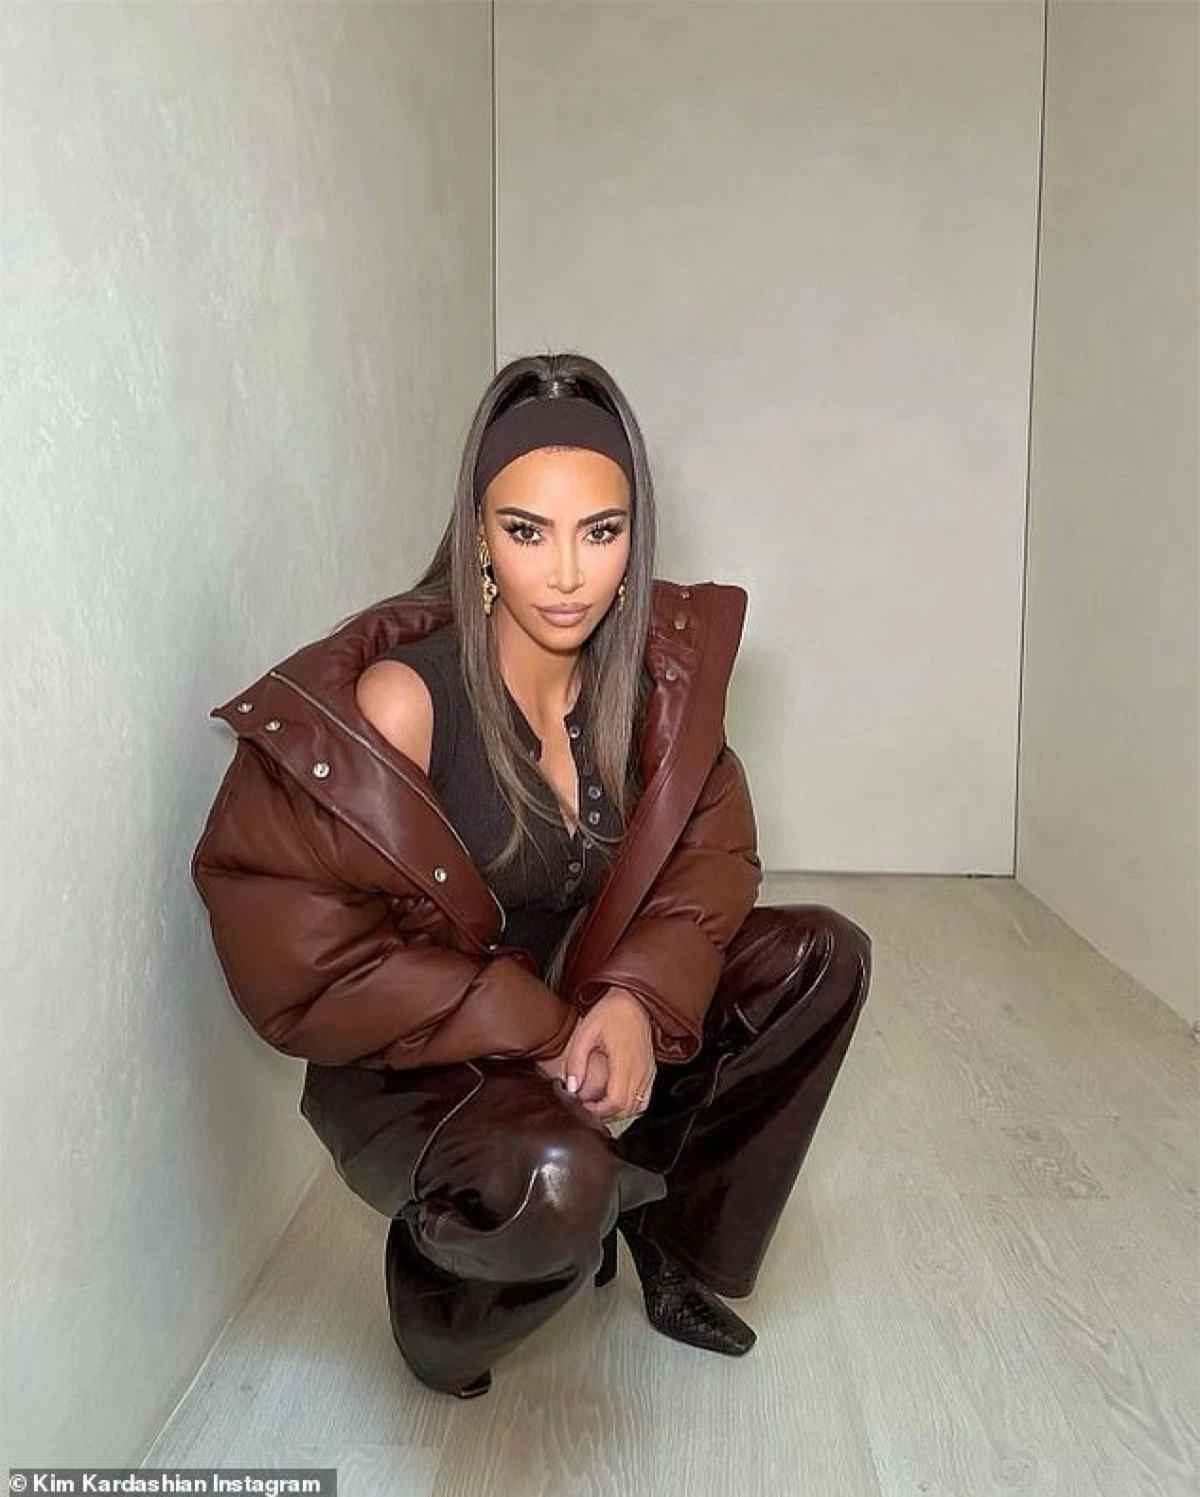 Màn tái xuất ấn tượng của Kim Kardashian nhận được nhiều sự quan tâm của công chúng.